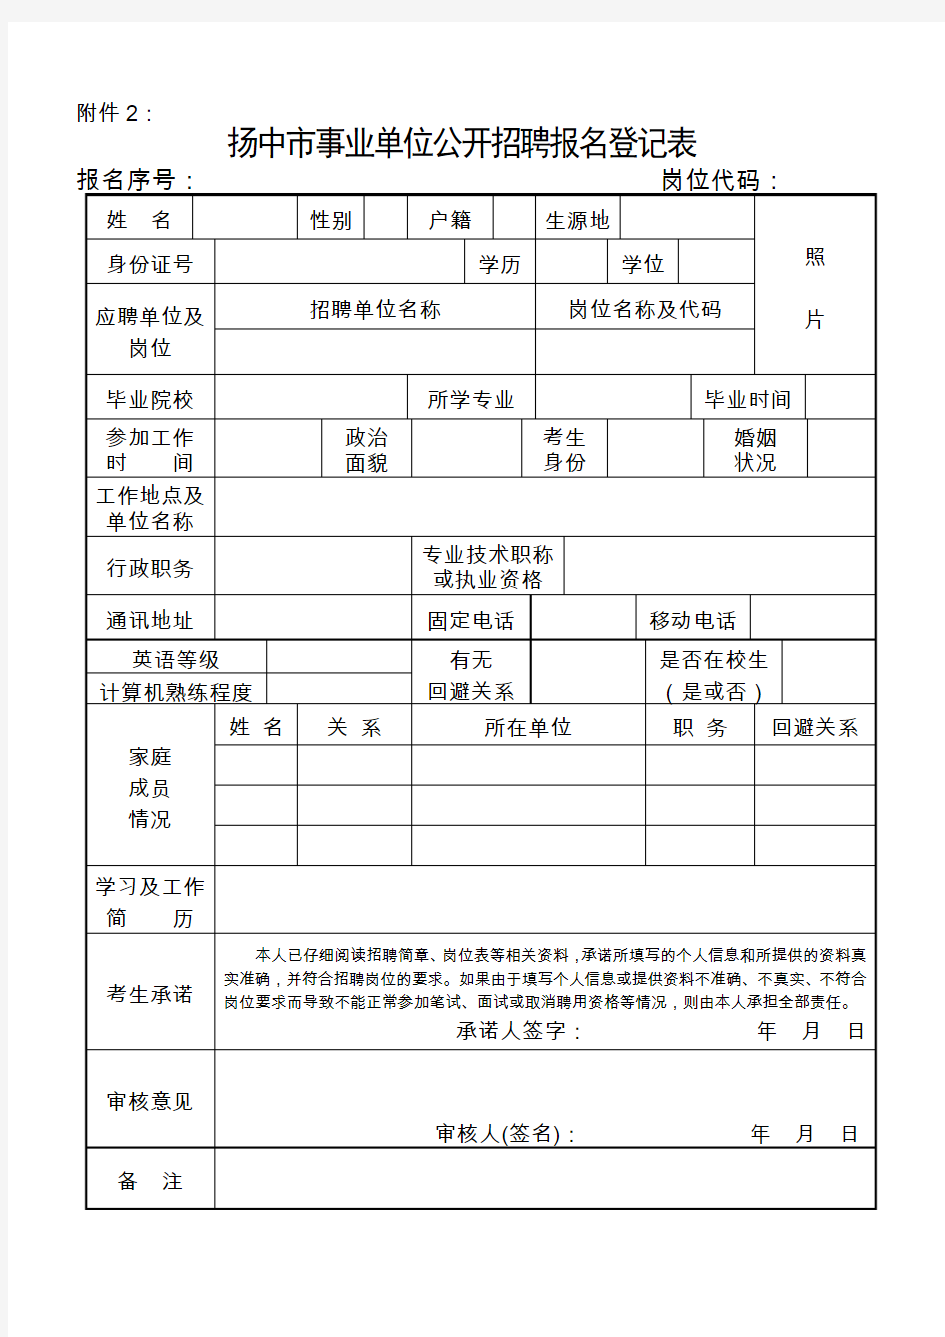 副本附件2：扬中市事业单位公开招聘报名登记表